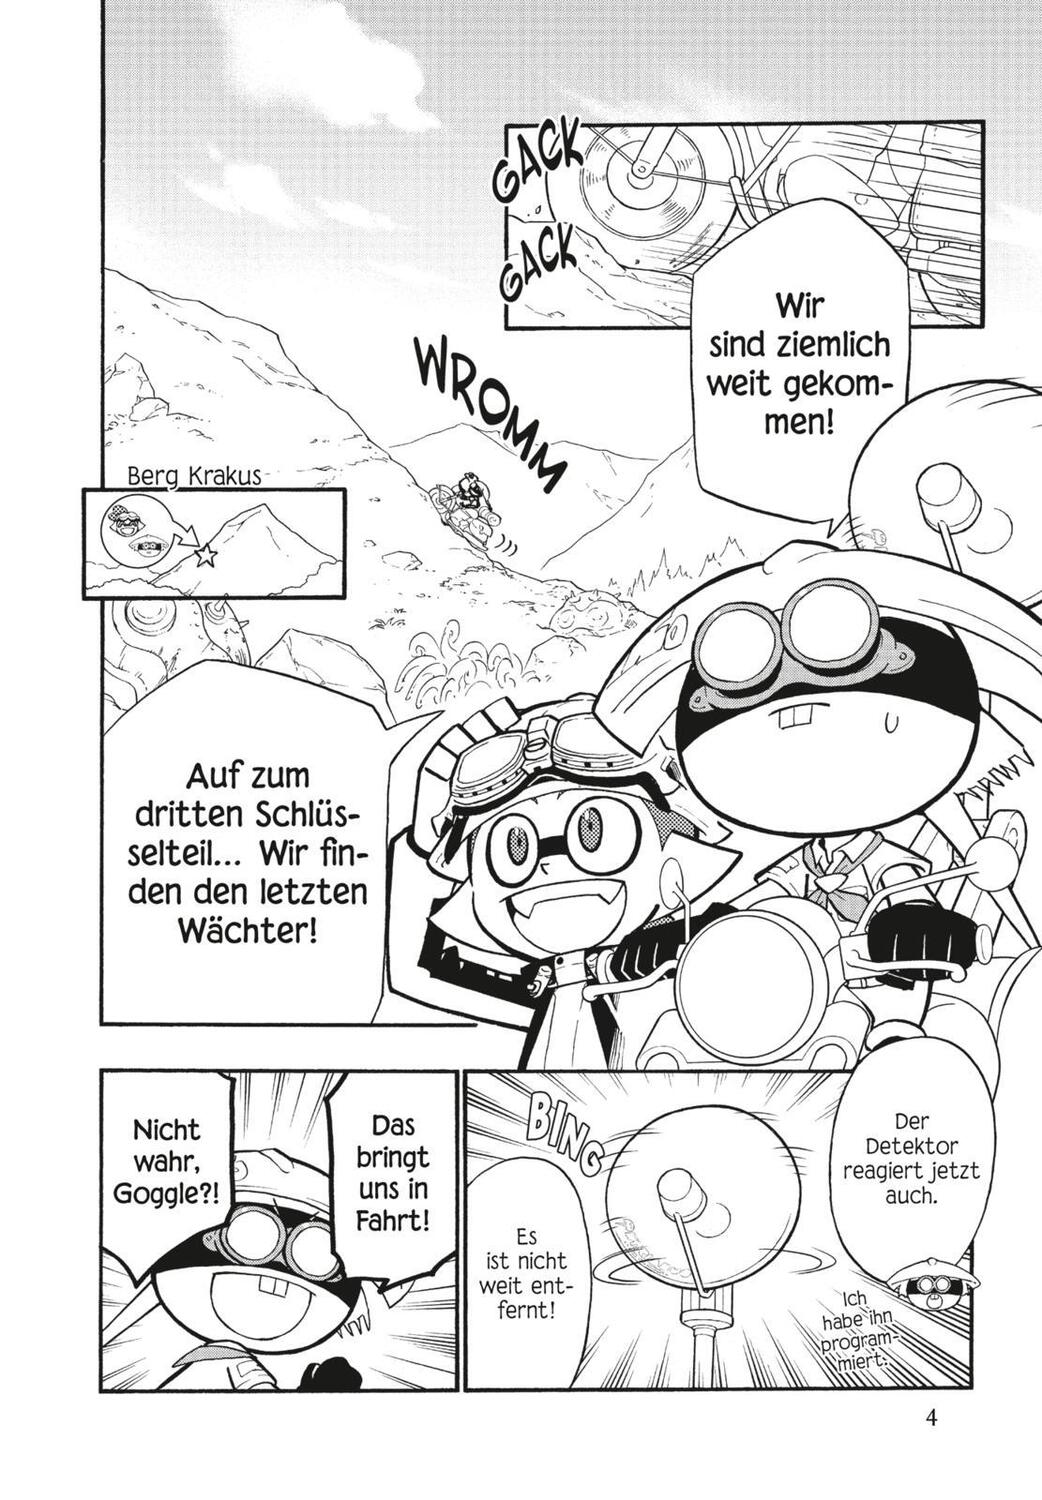 Bild: 9783551793898 | Splatoon 13 | Das Nintendo-Game als Manga! Ideal für Kinder und Gamer!